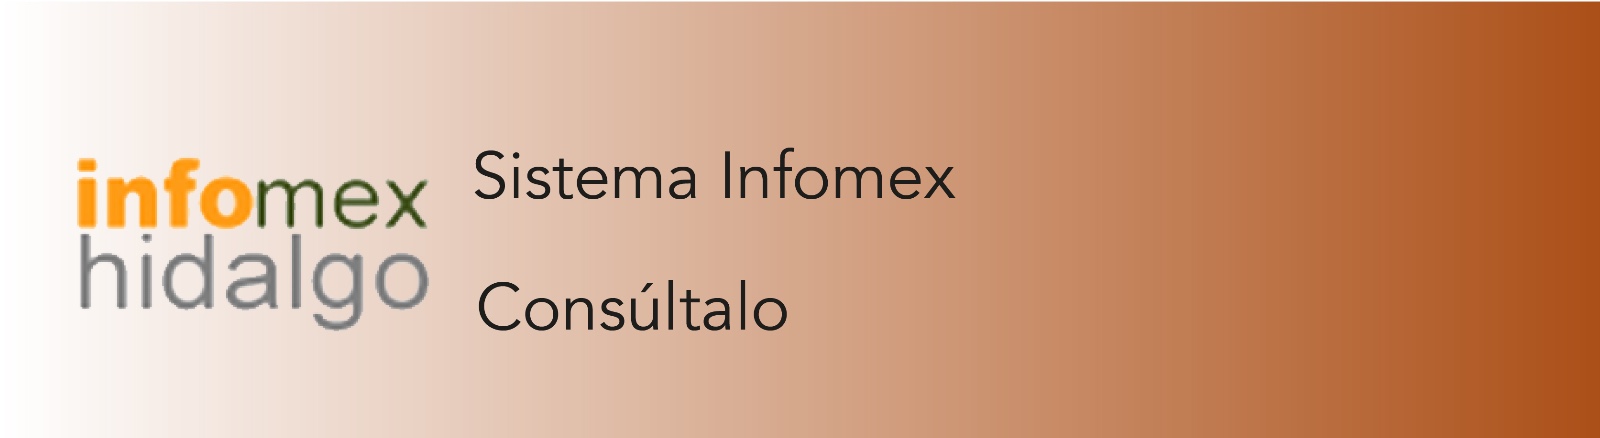 Imagen que permite acceder al Sistema Infomex